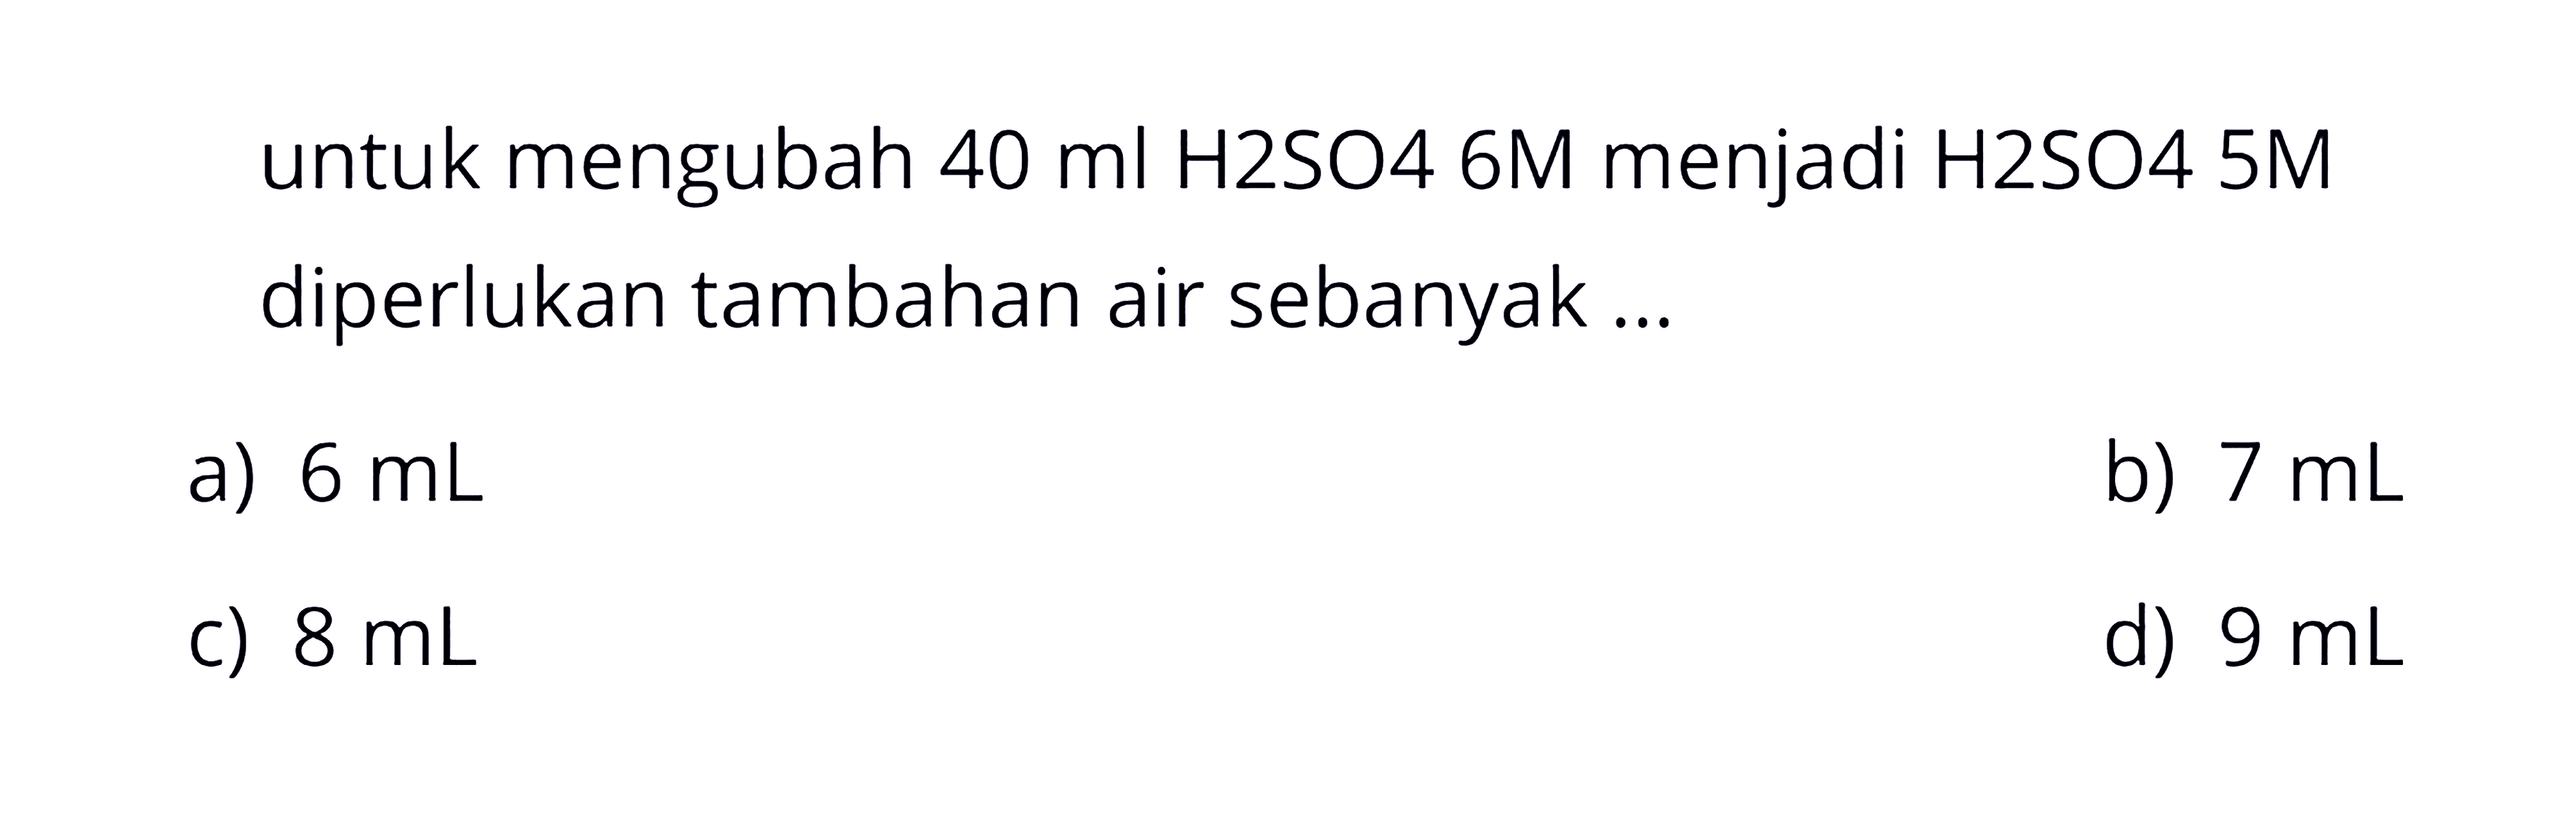 untuk mengubah  40 ml  H2SO4  6 M  menjadi H2SO4 5M diperlukan tambahan air sebanyak ...
